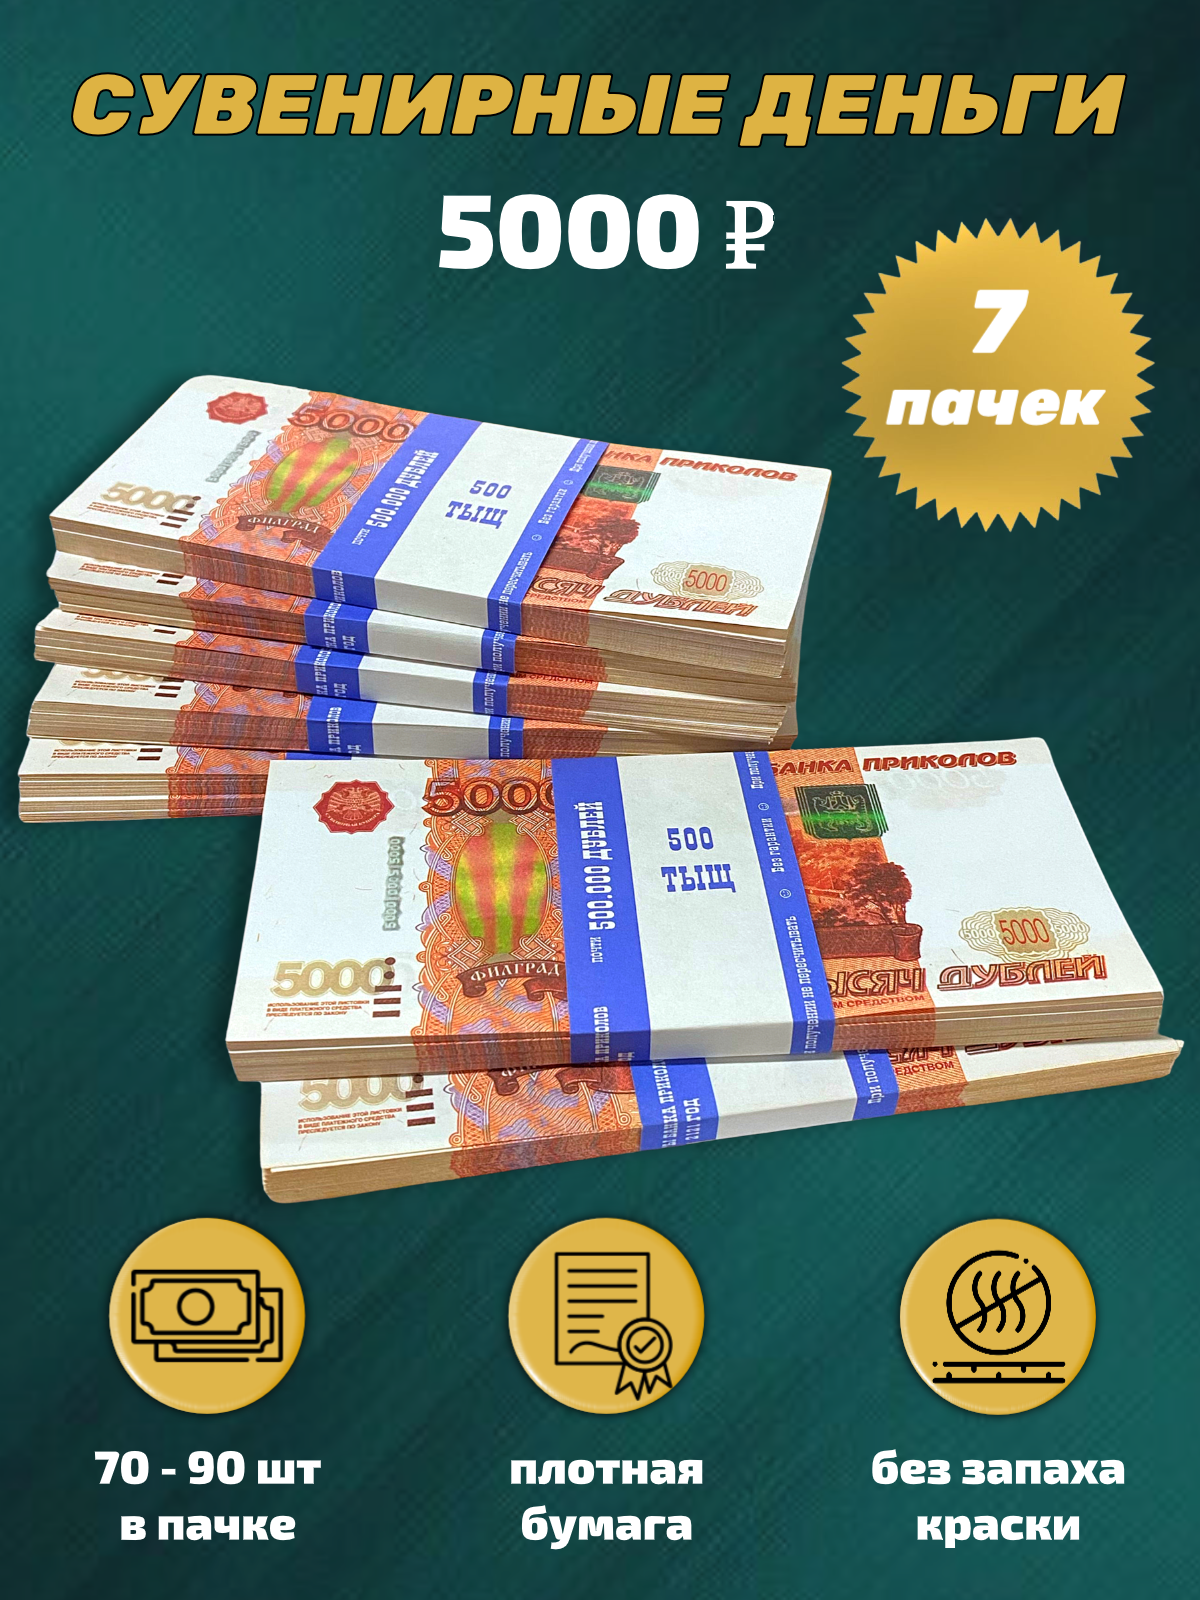 Сувенирные деньги набор 5000 руб - 7 пачек